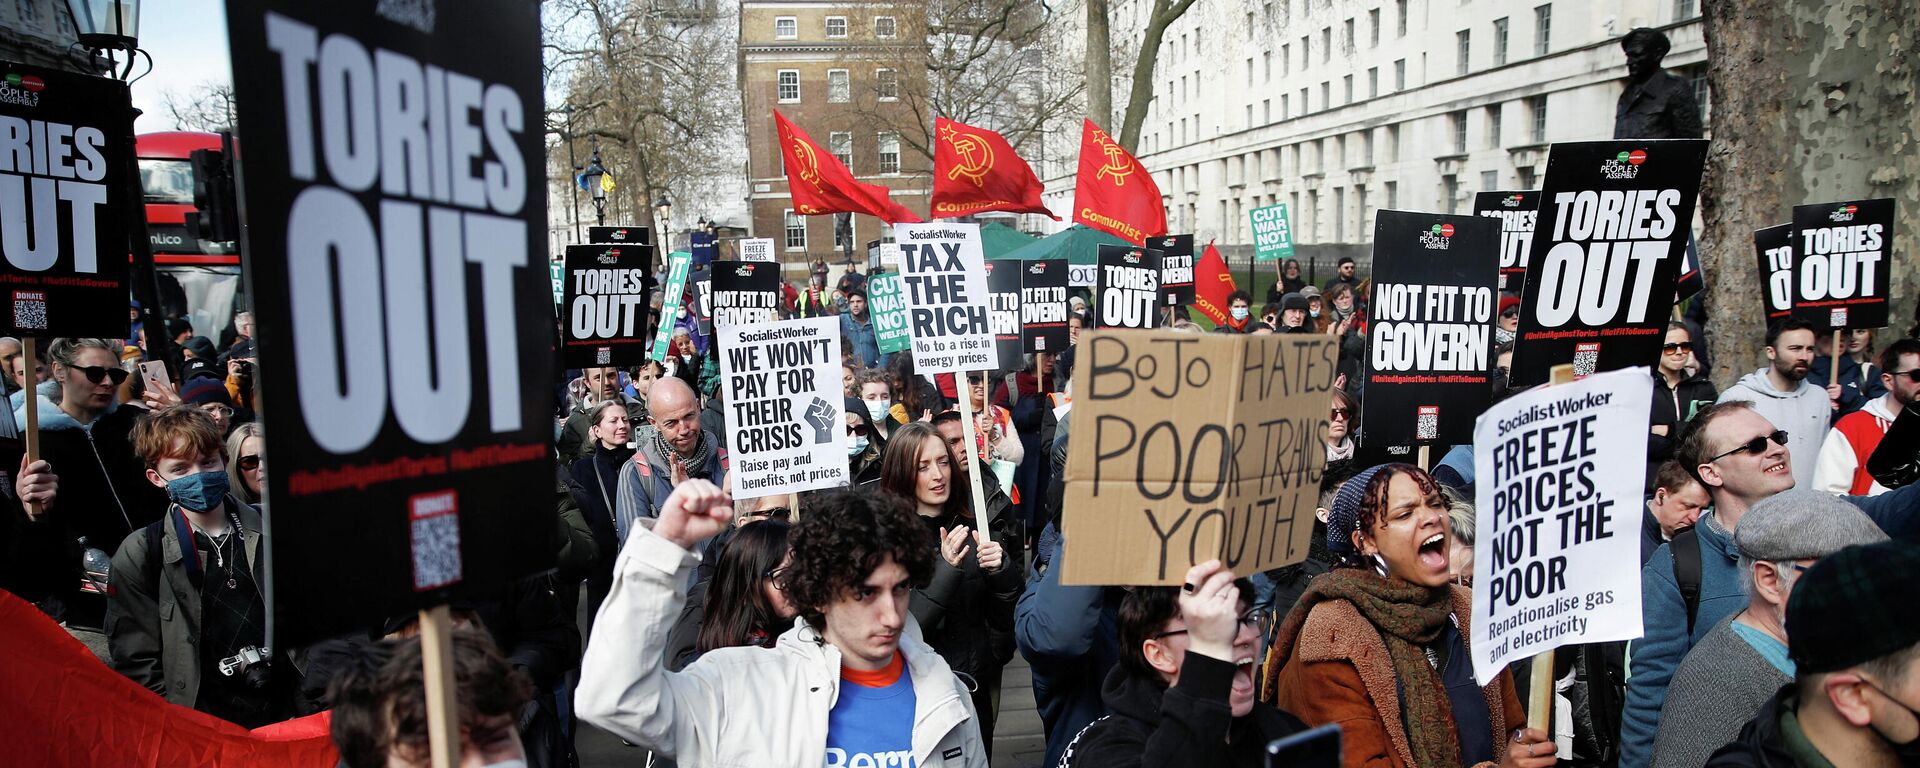 Активисты движения National Assembly вышли на антиправительственный протест в центре Лондона из-за резкого роста цен на электричество и газ - Sputnik Кыргызстан, 1920, 02.04.2022